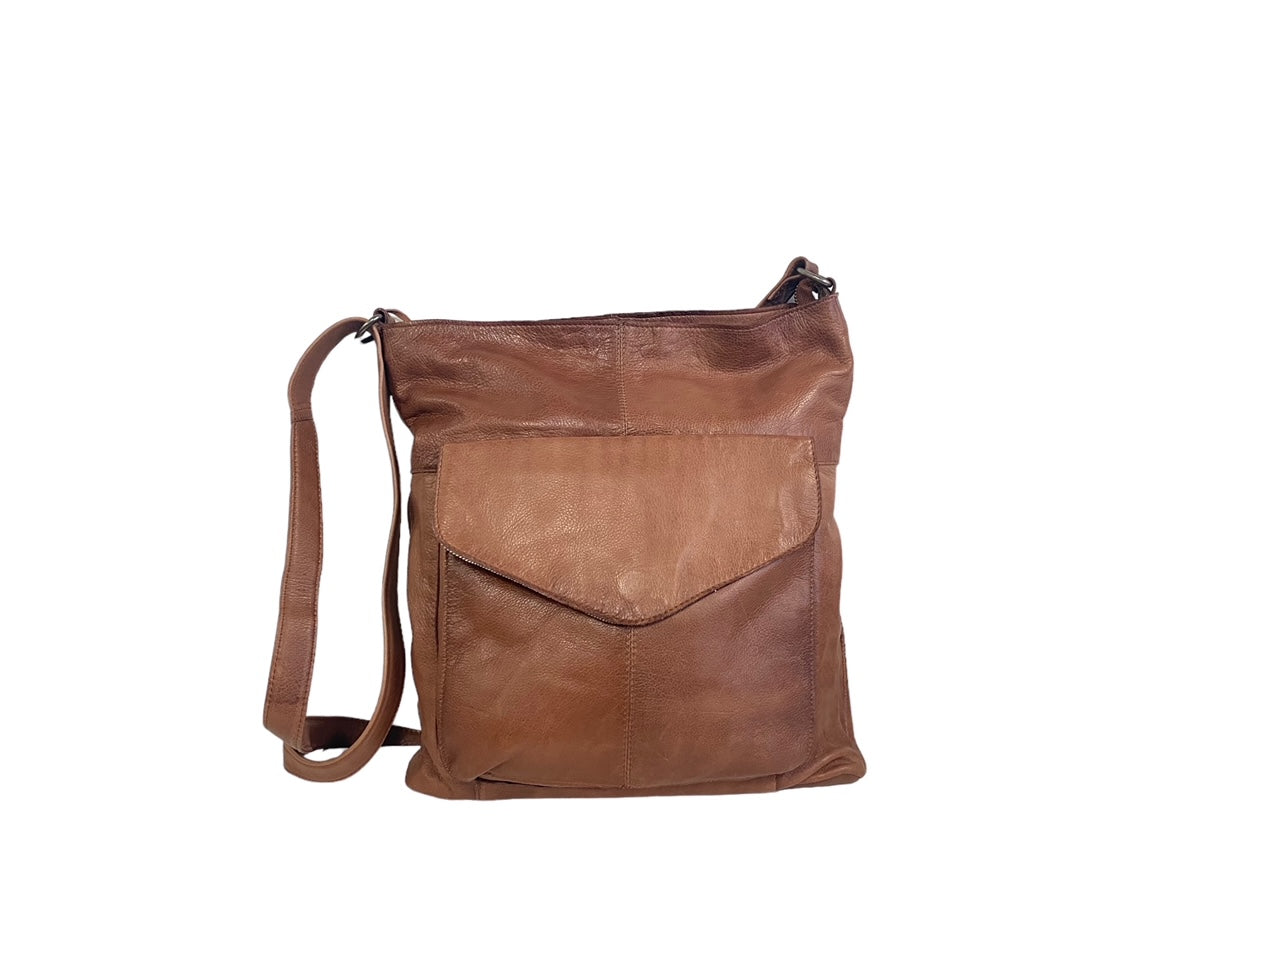 Oran By Rugged Hide Emily Leather Handbag